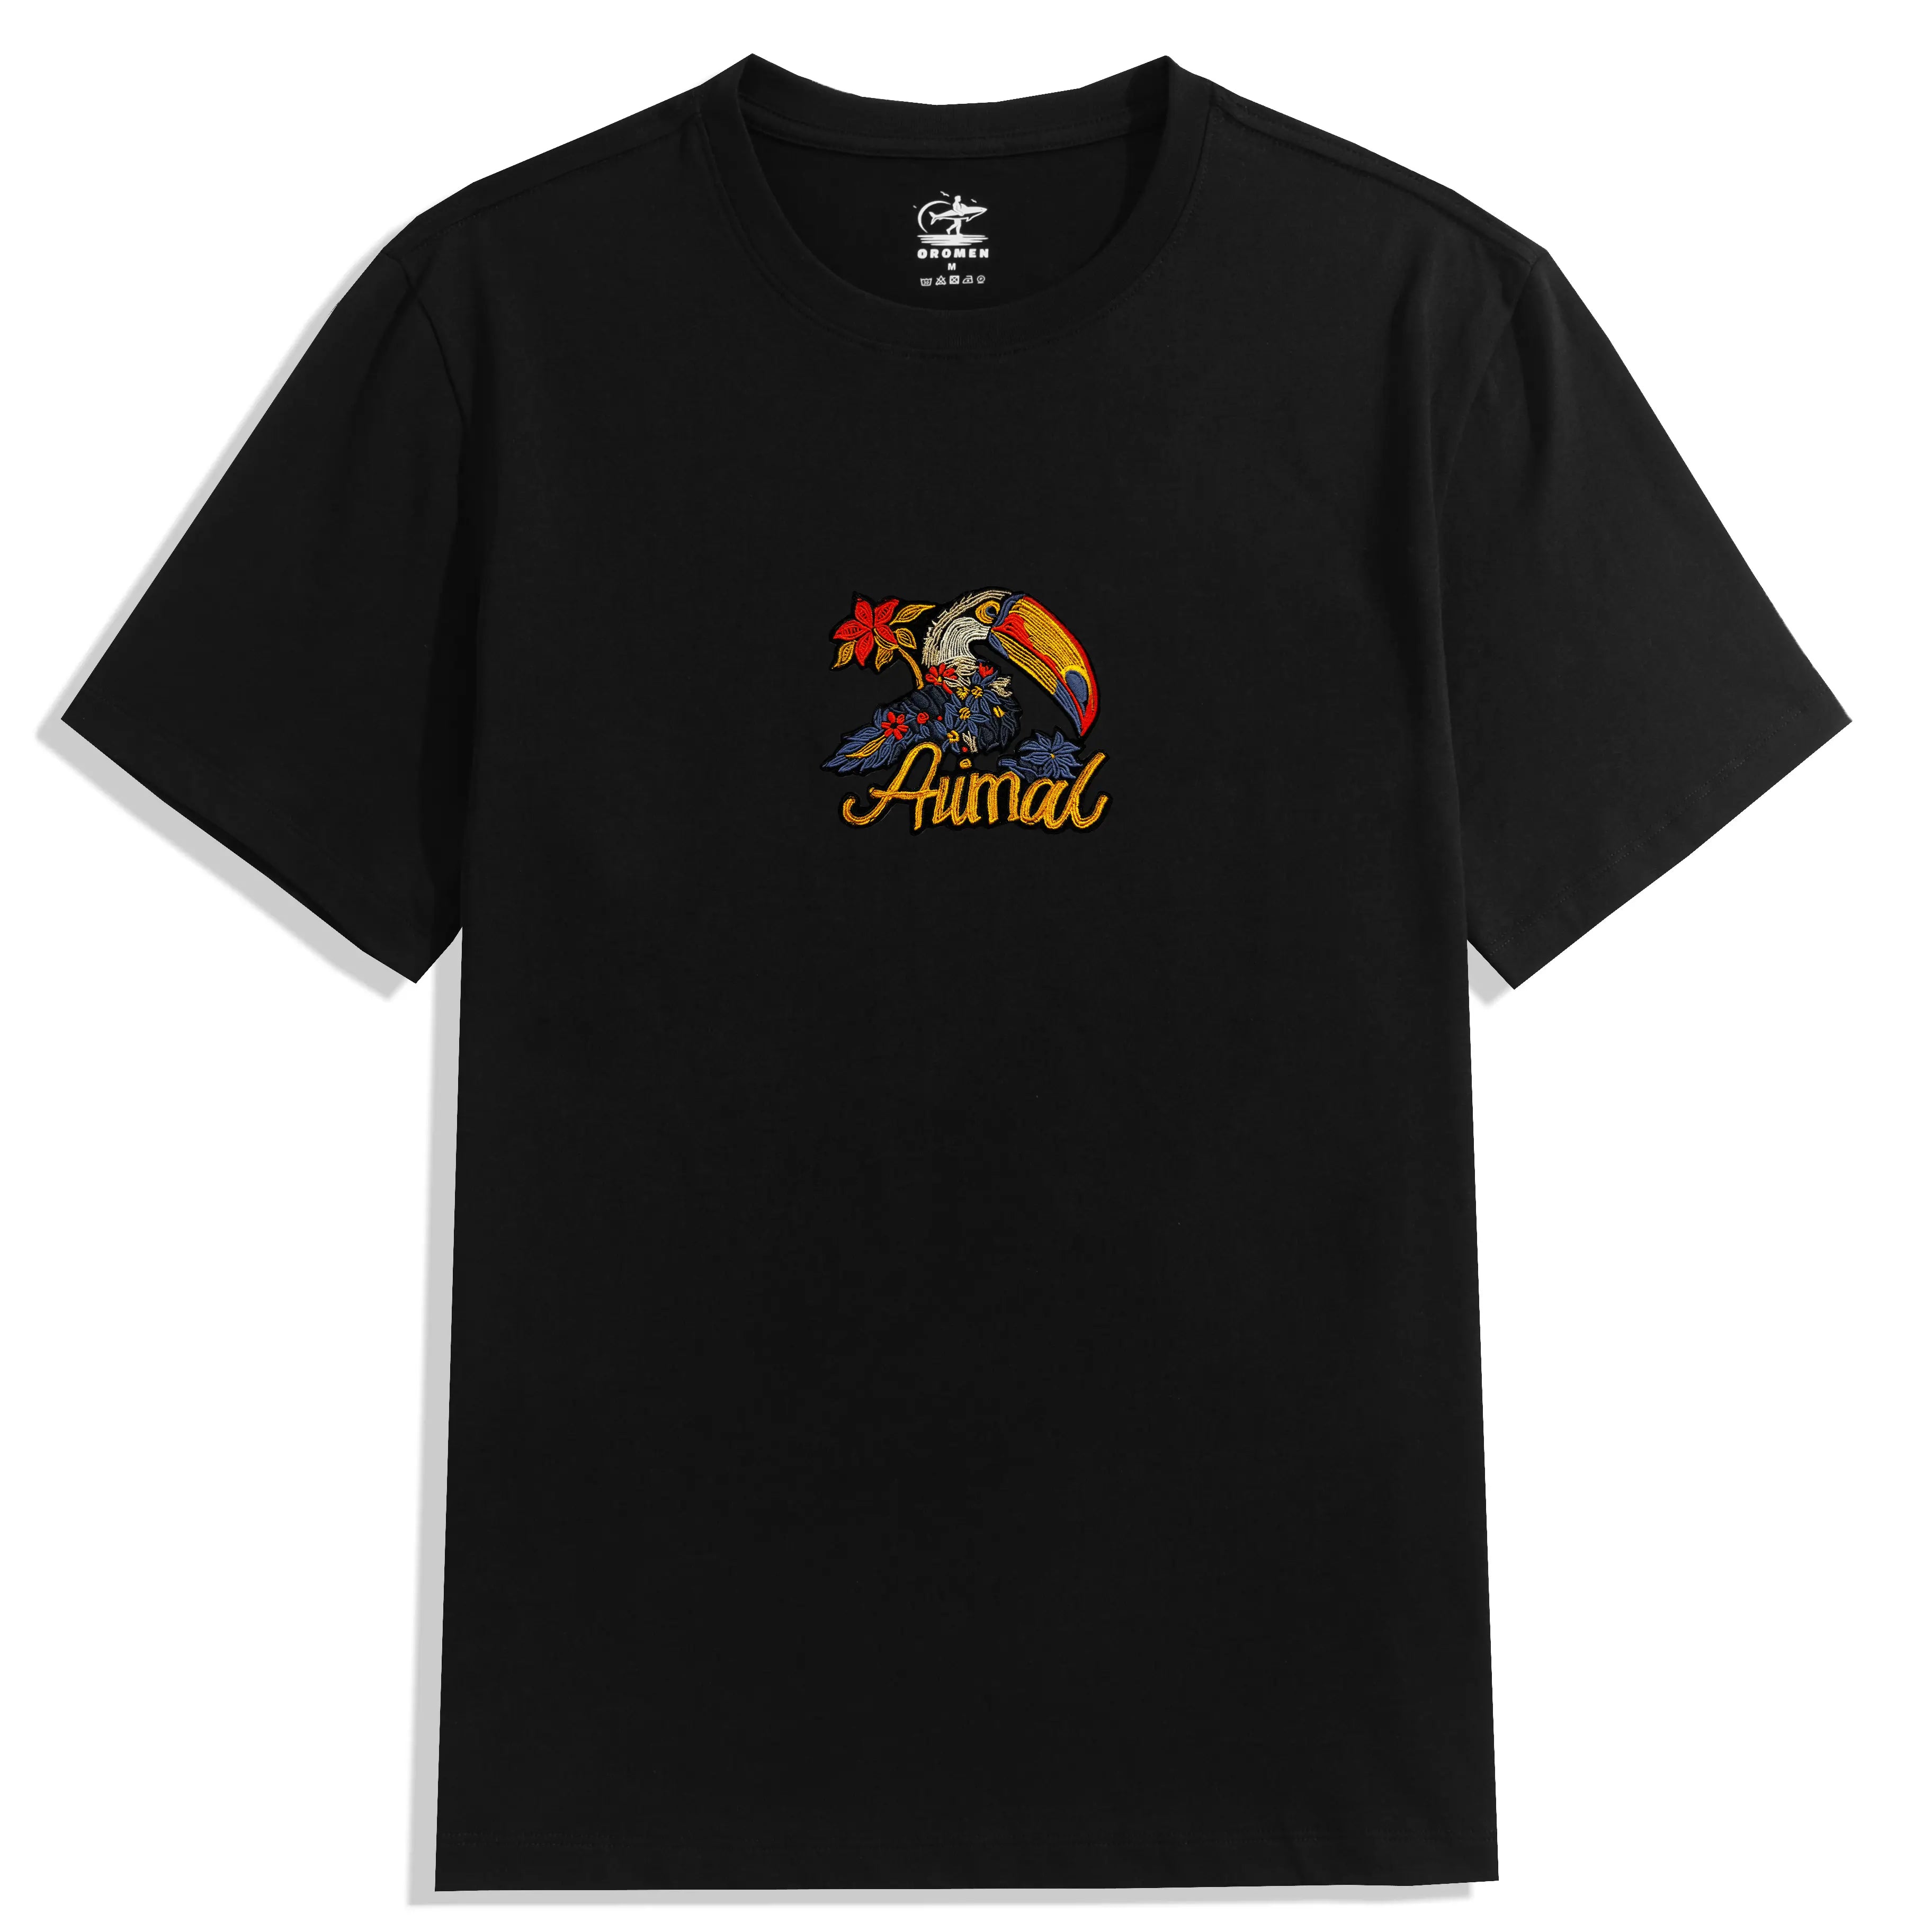 Pelicans Cotton T-shirt Black Color